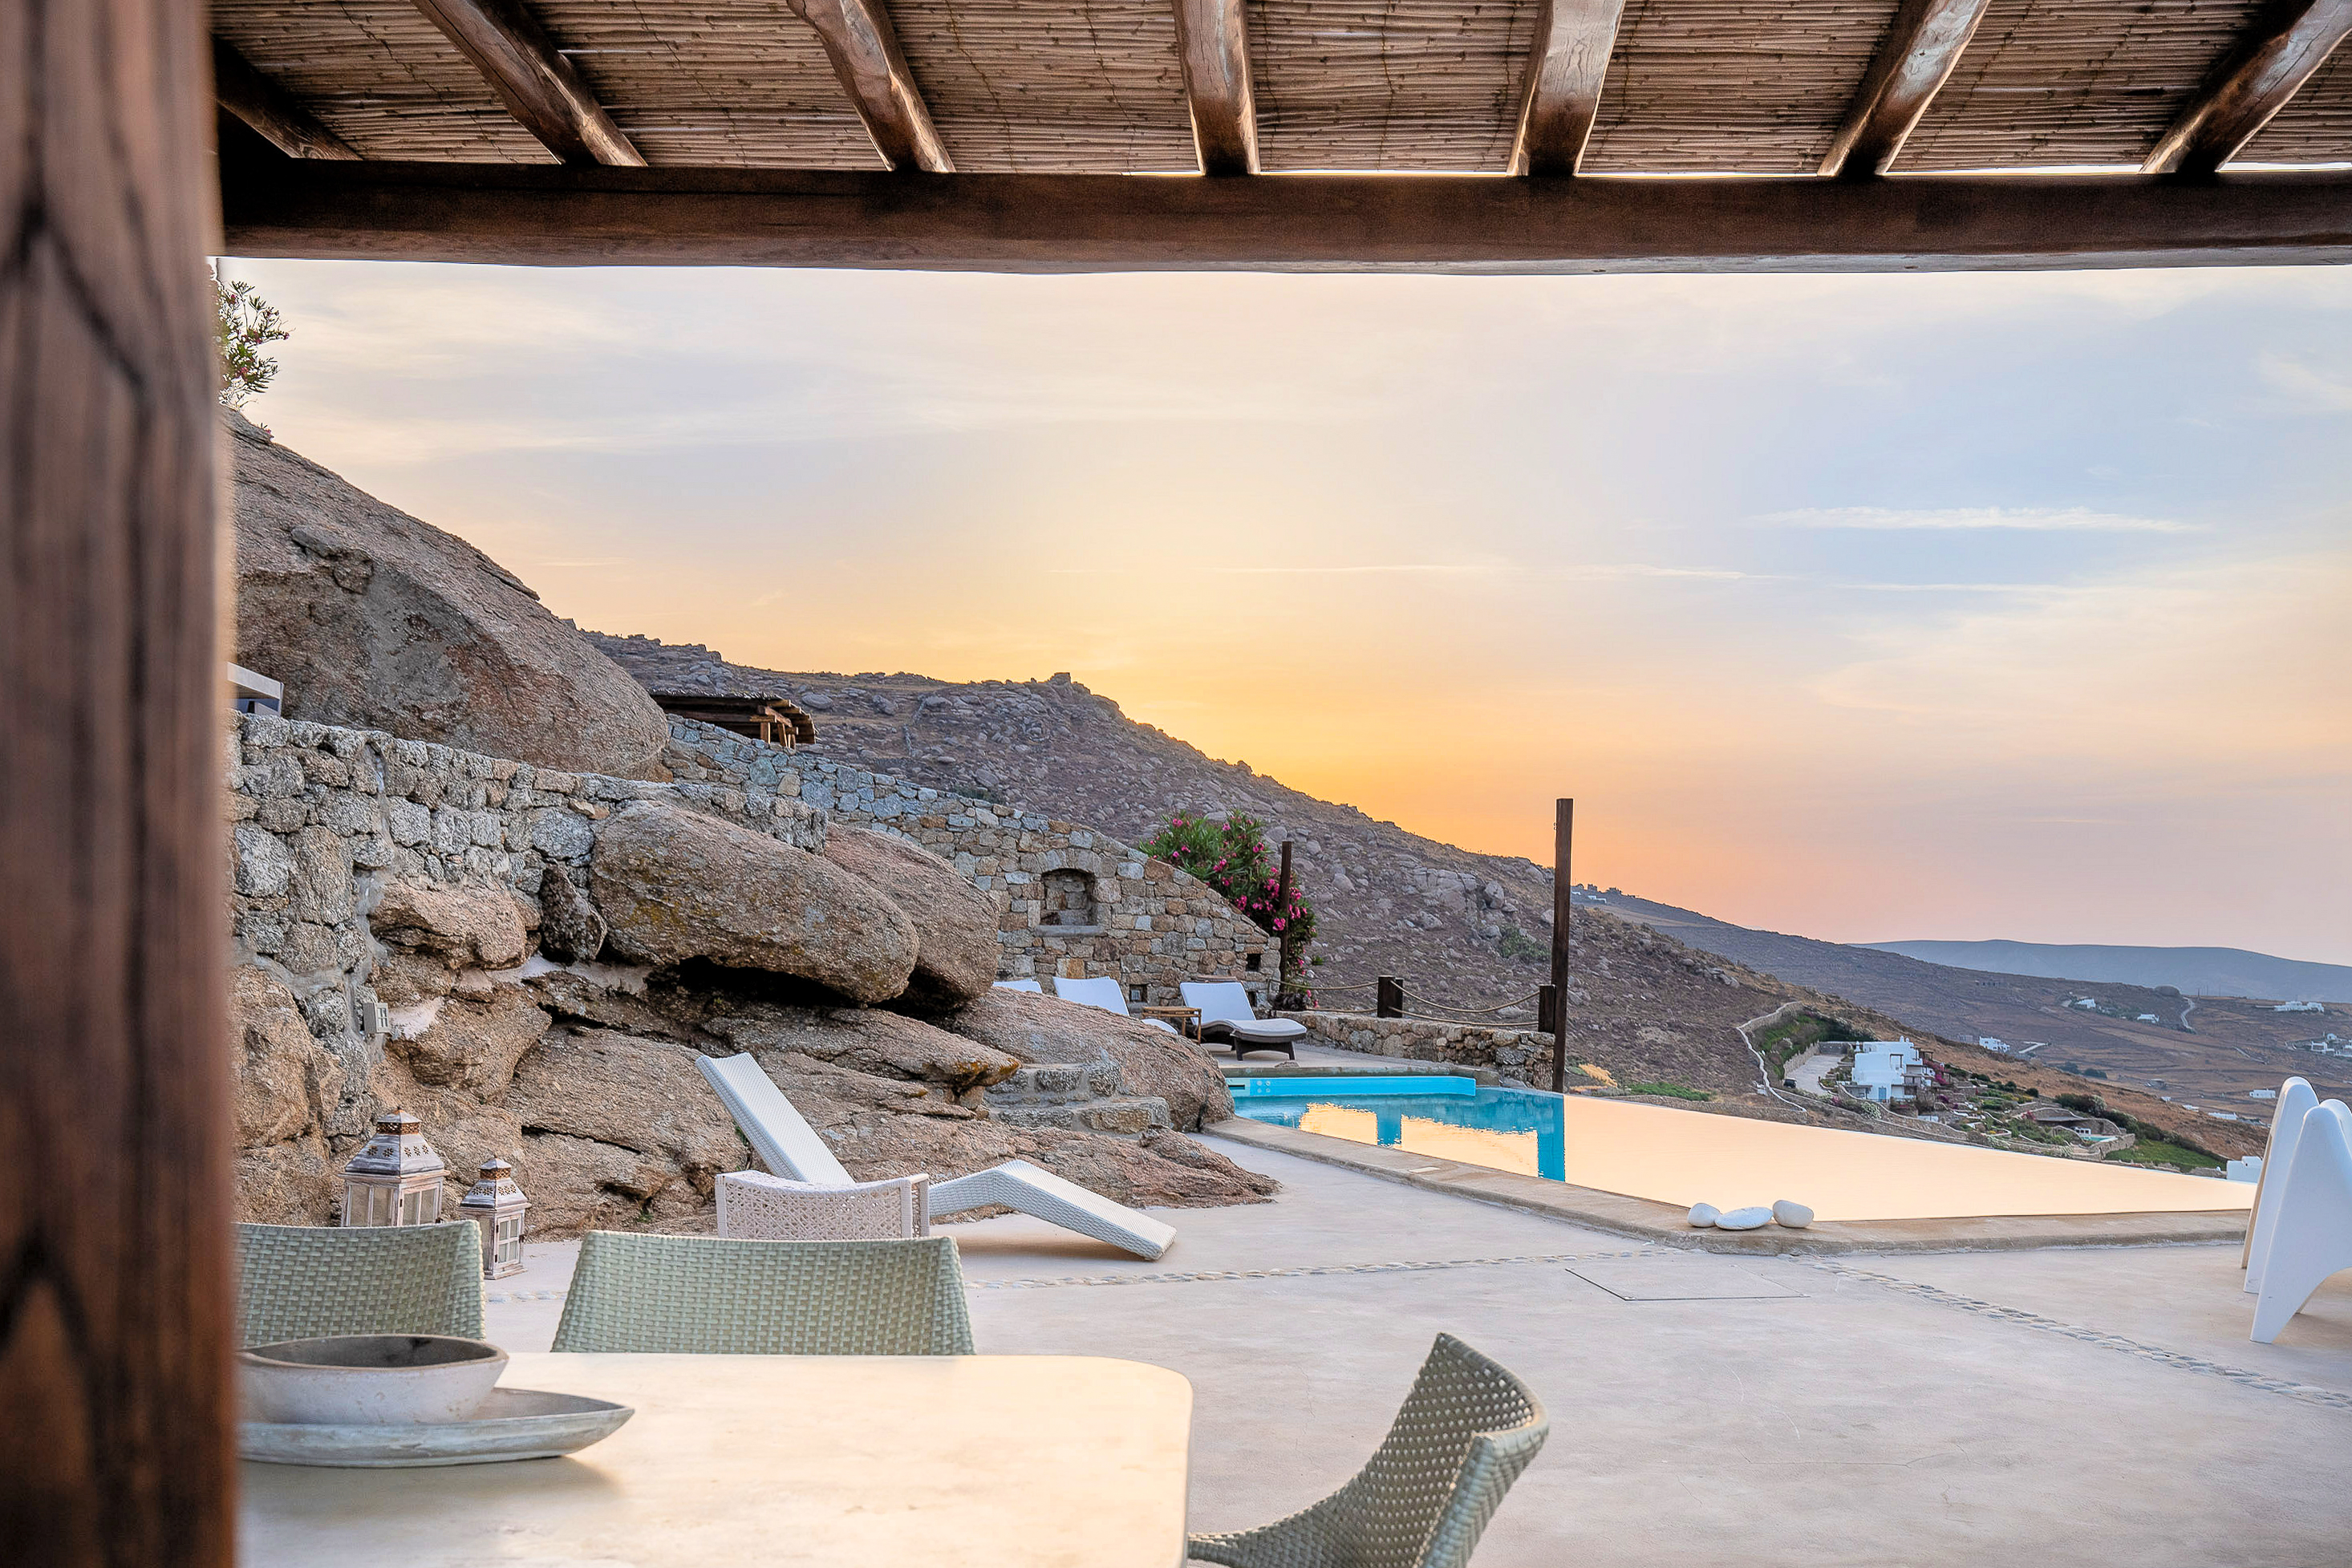 Full Sea View private Pool Villa, Kalafatis Beach - Houses for Rent in  Kalafati, Greece